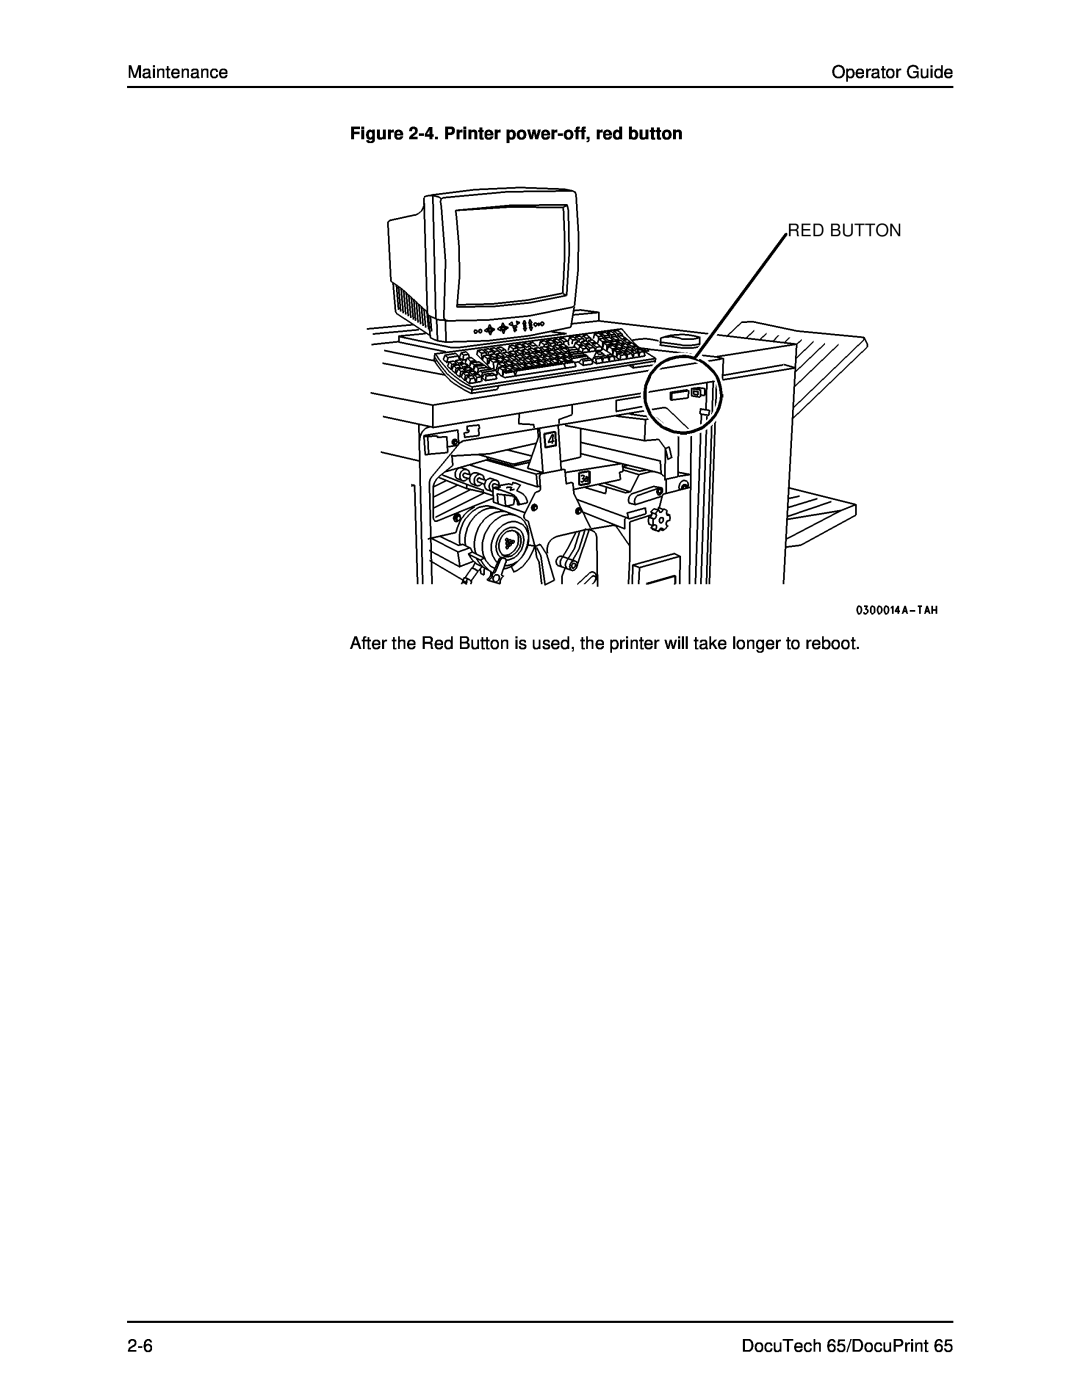 Xerox DOCUTECH 65 manual Maintenance, Operator Guide, 4. Printer power-off, red button, Red Button, DocuTech 65/DocuPrint 